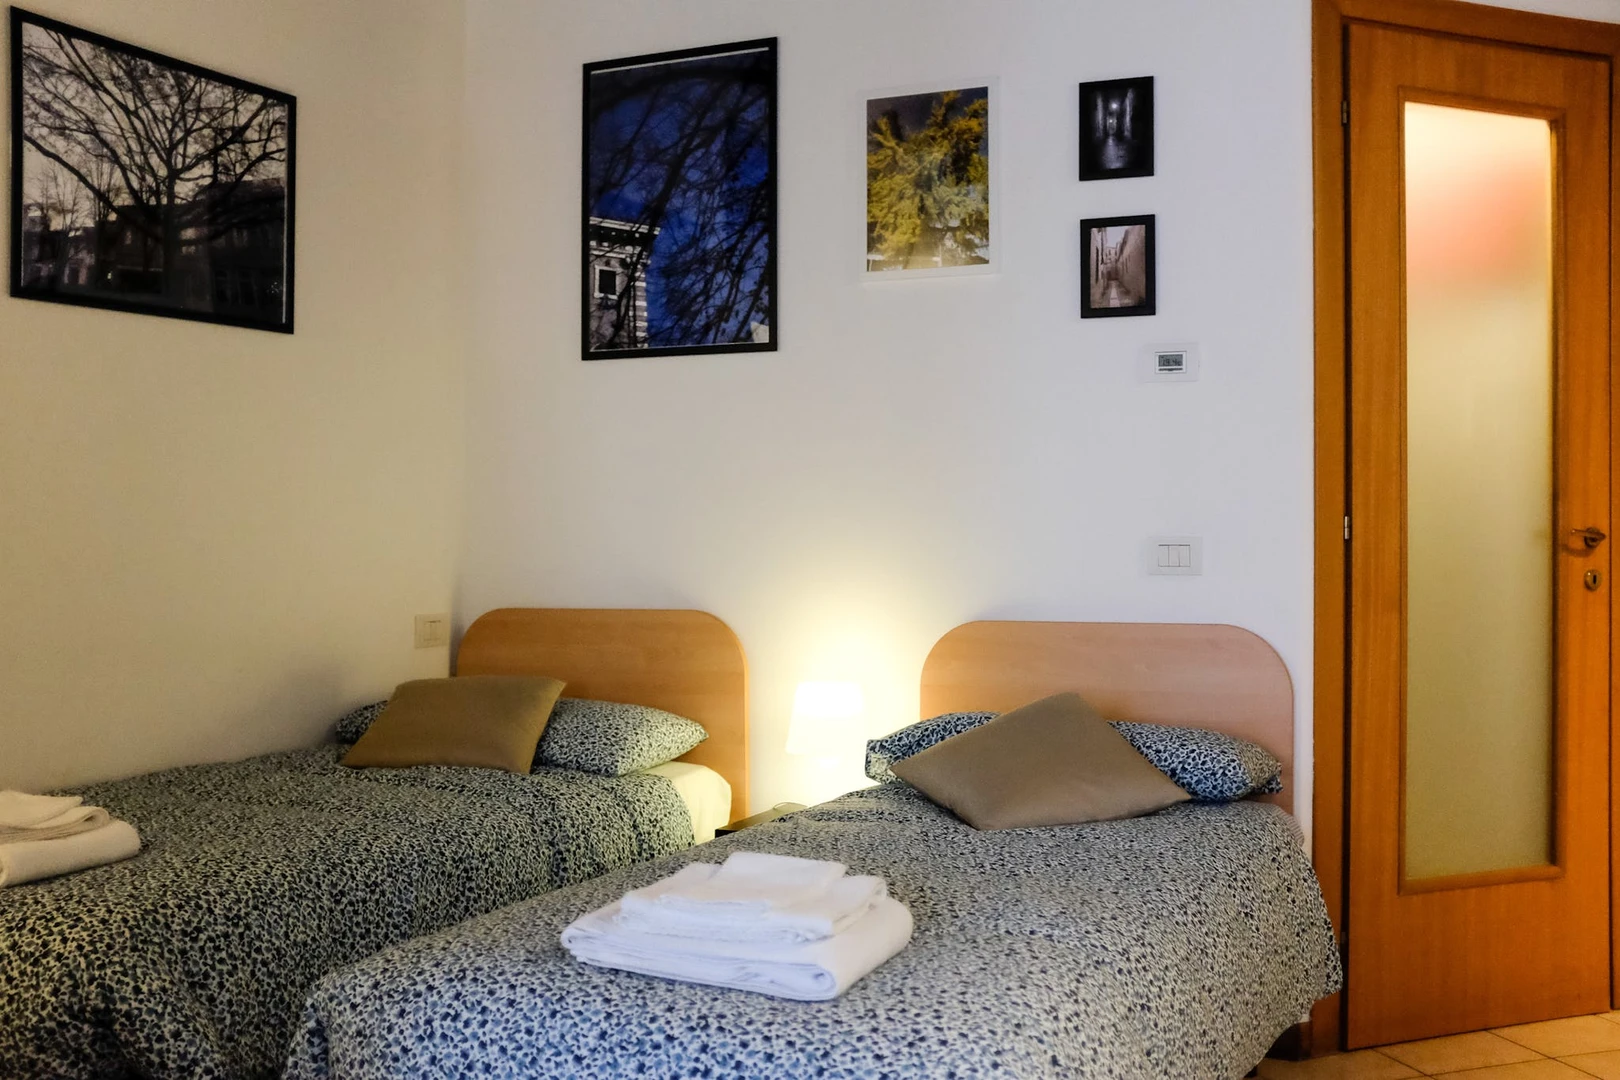 Moderne und helle Wohnung in Forlì